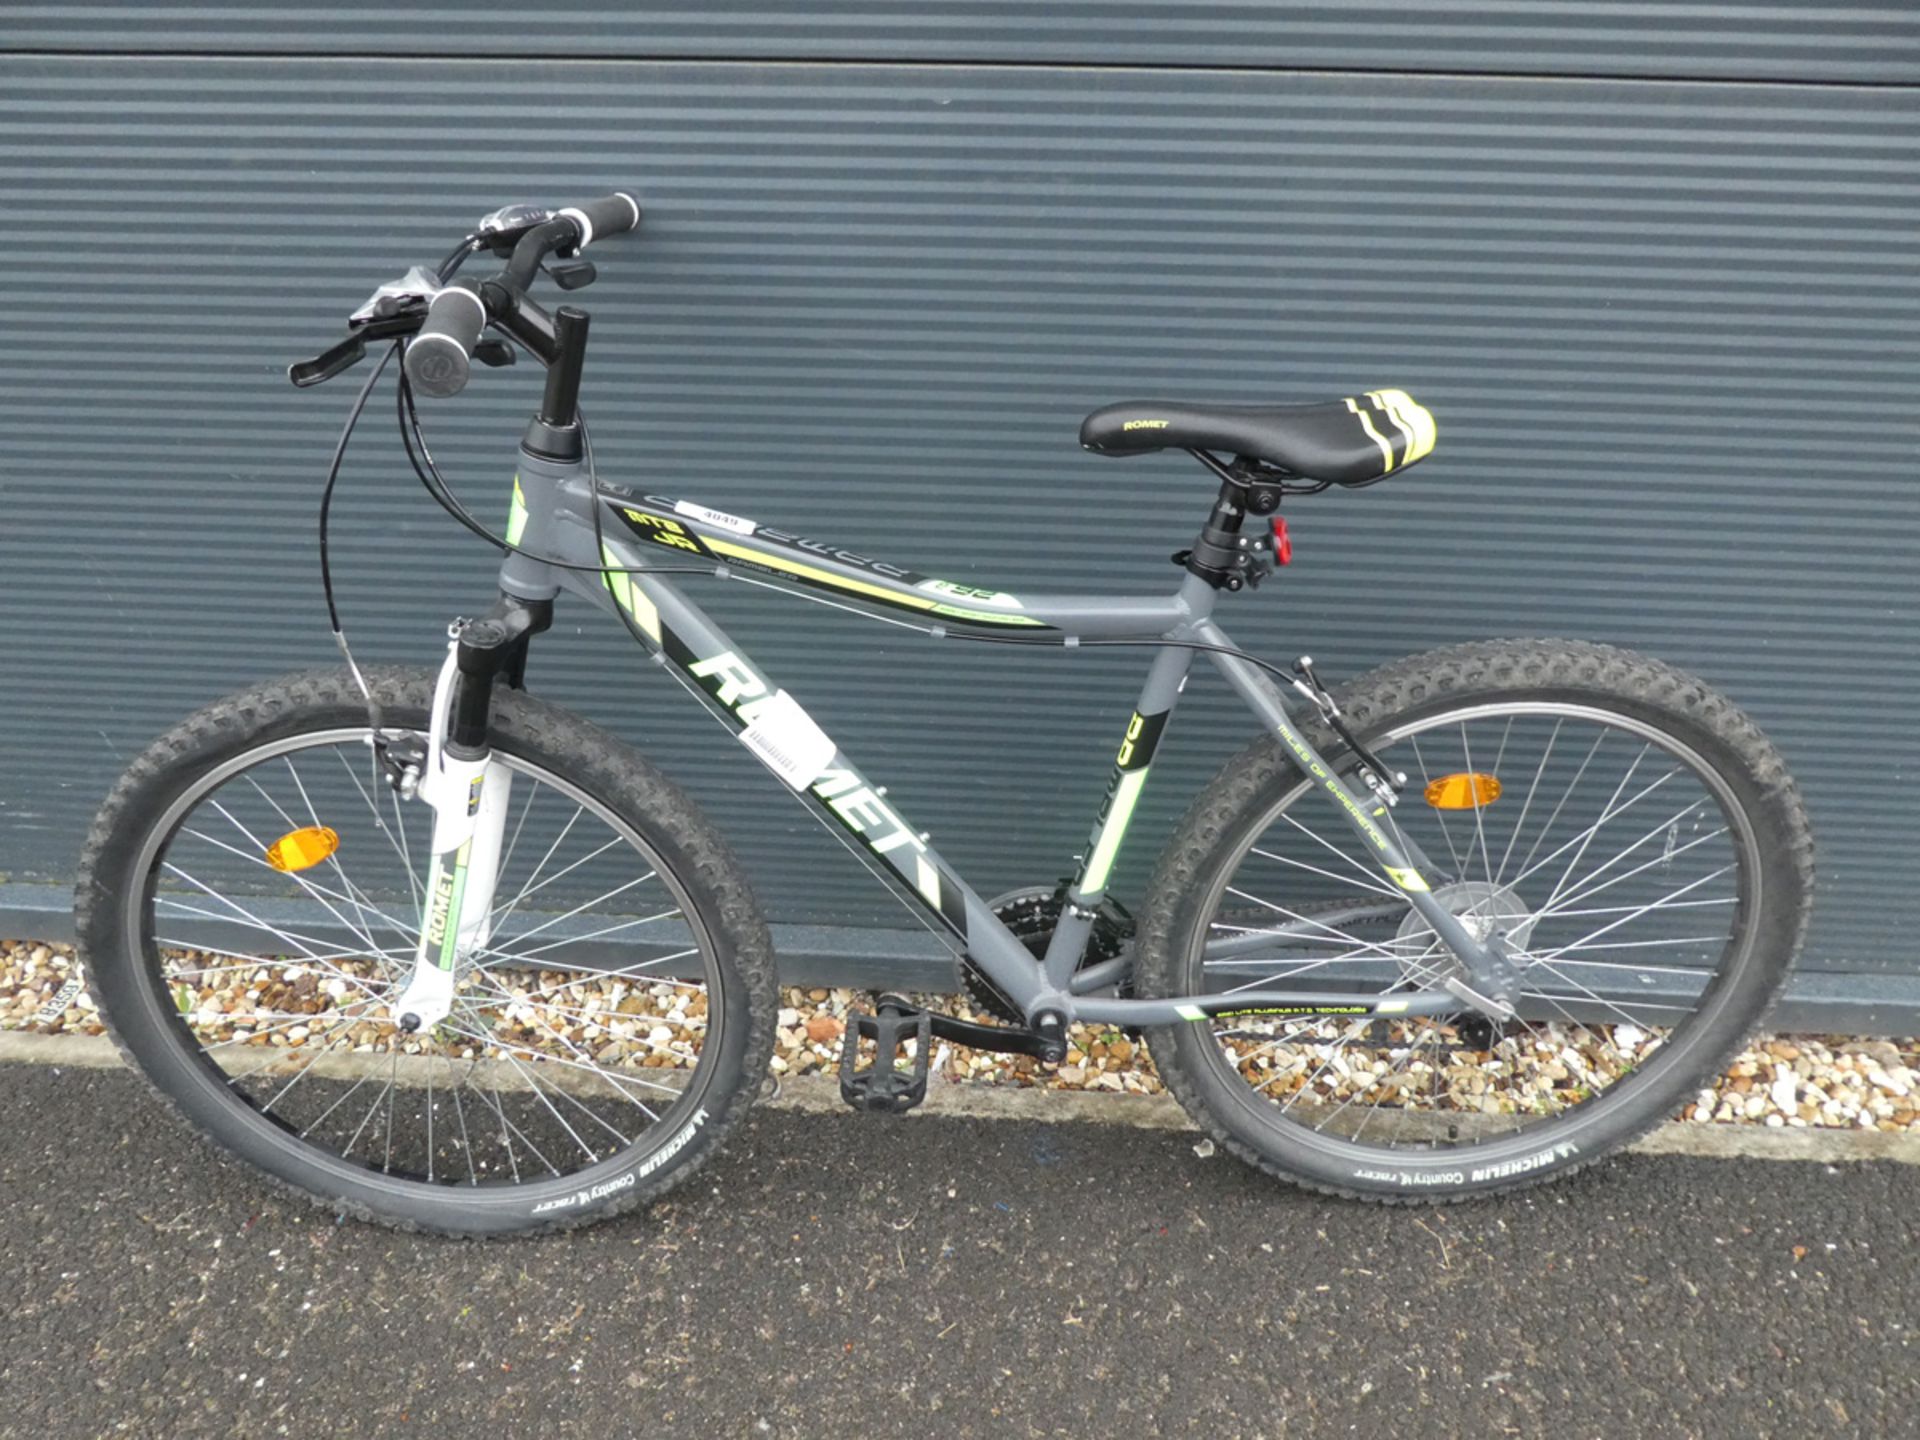 Rommett mountain bike in green and grey